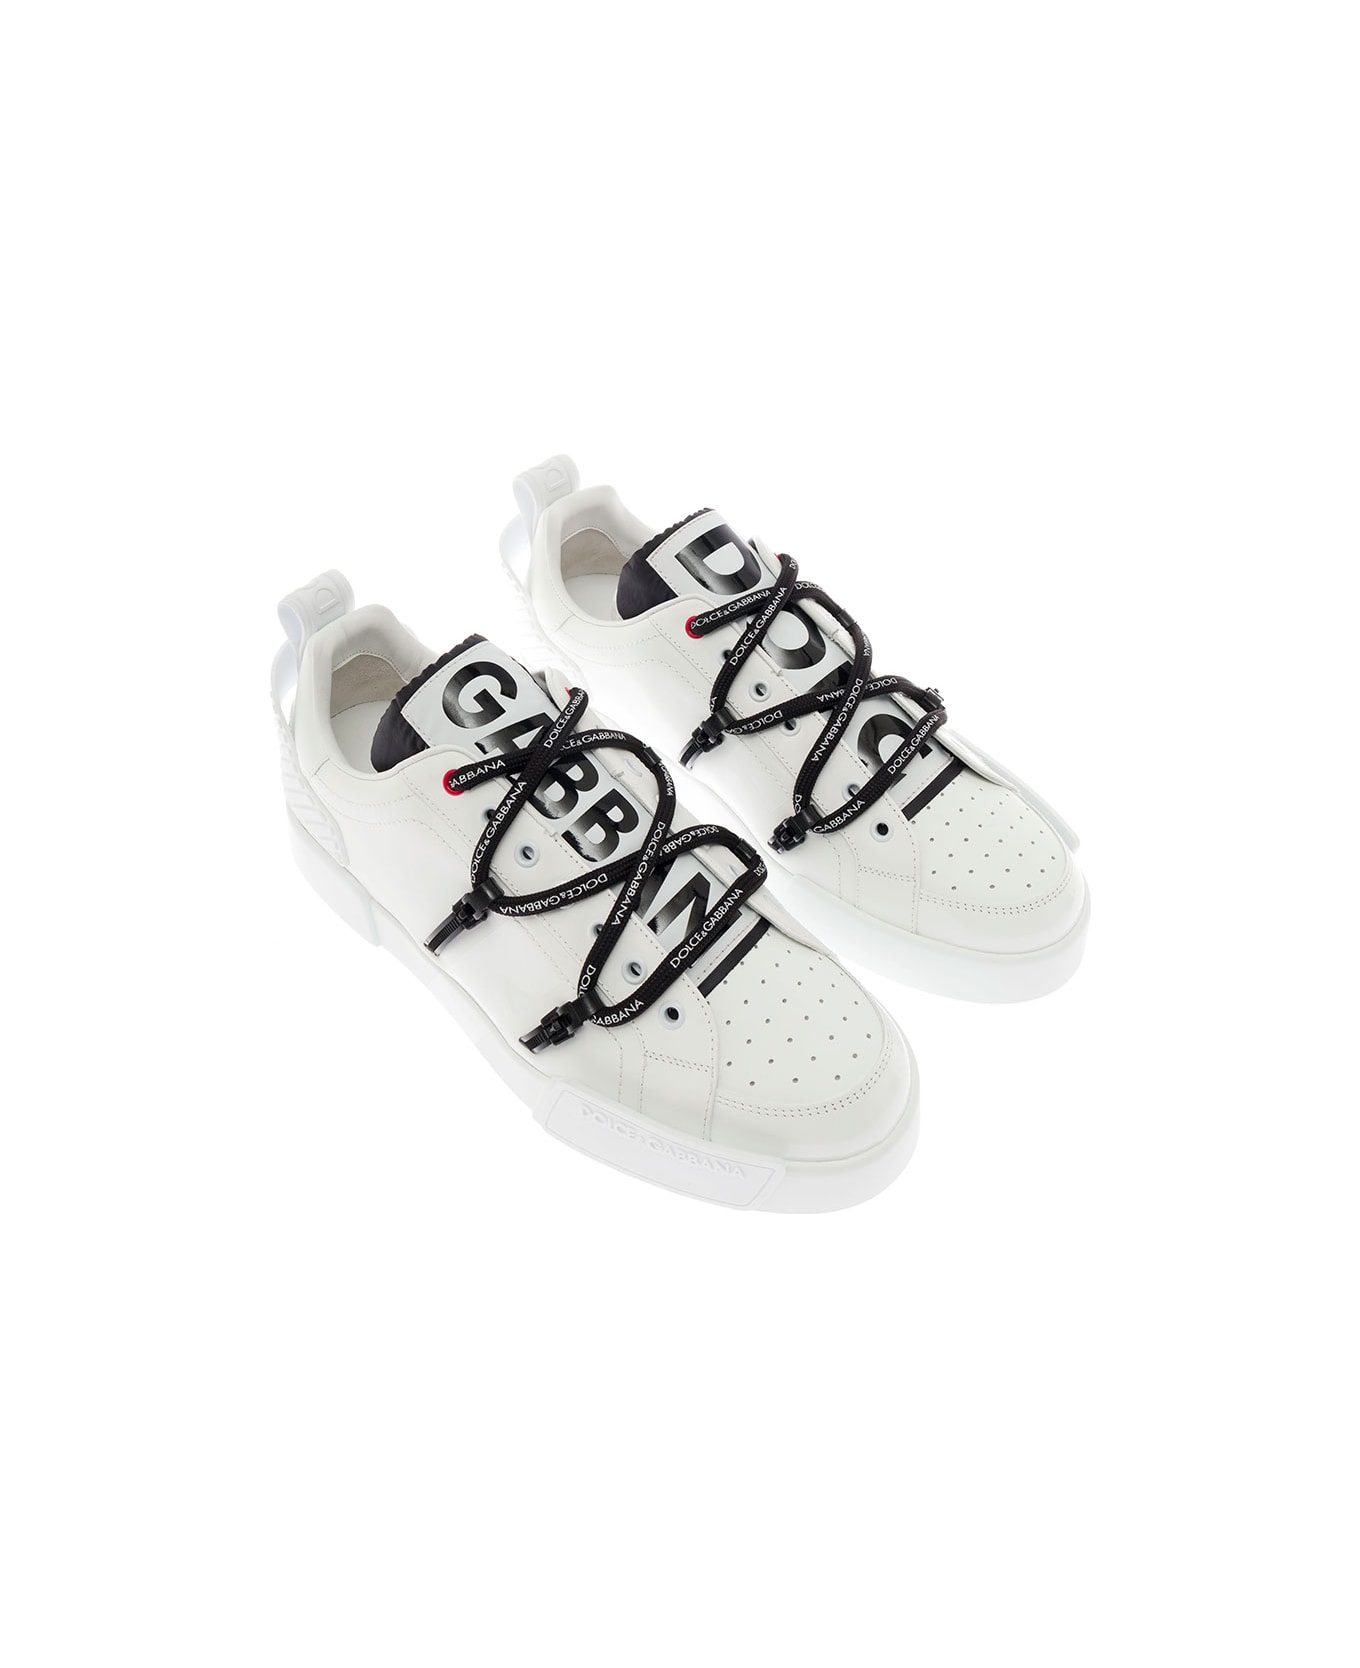 Dolce & Gabbana Man's Portofino White Leather And Patent Sneakers - White